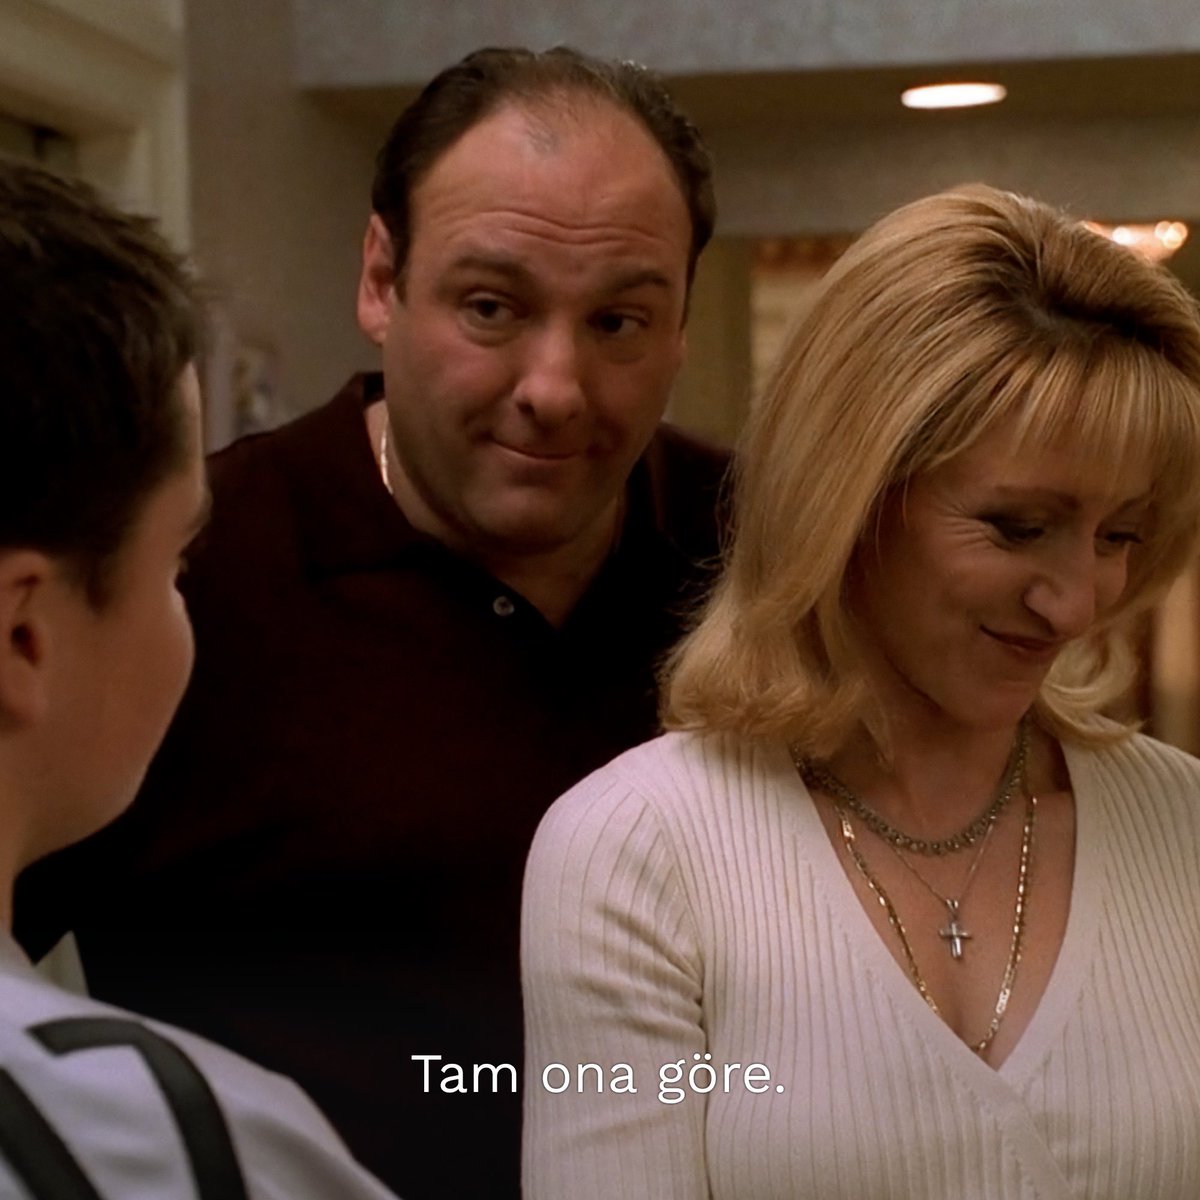 Anneler Günü için hediye tavsiyesi. The Sopranos, tüm sezonlarıyla BluTV'de.